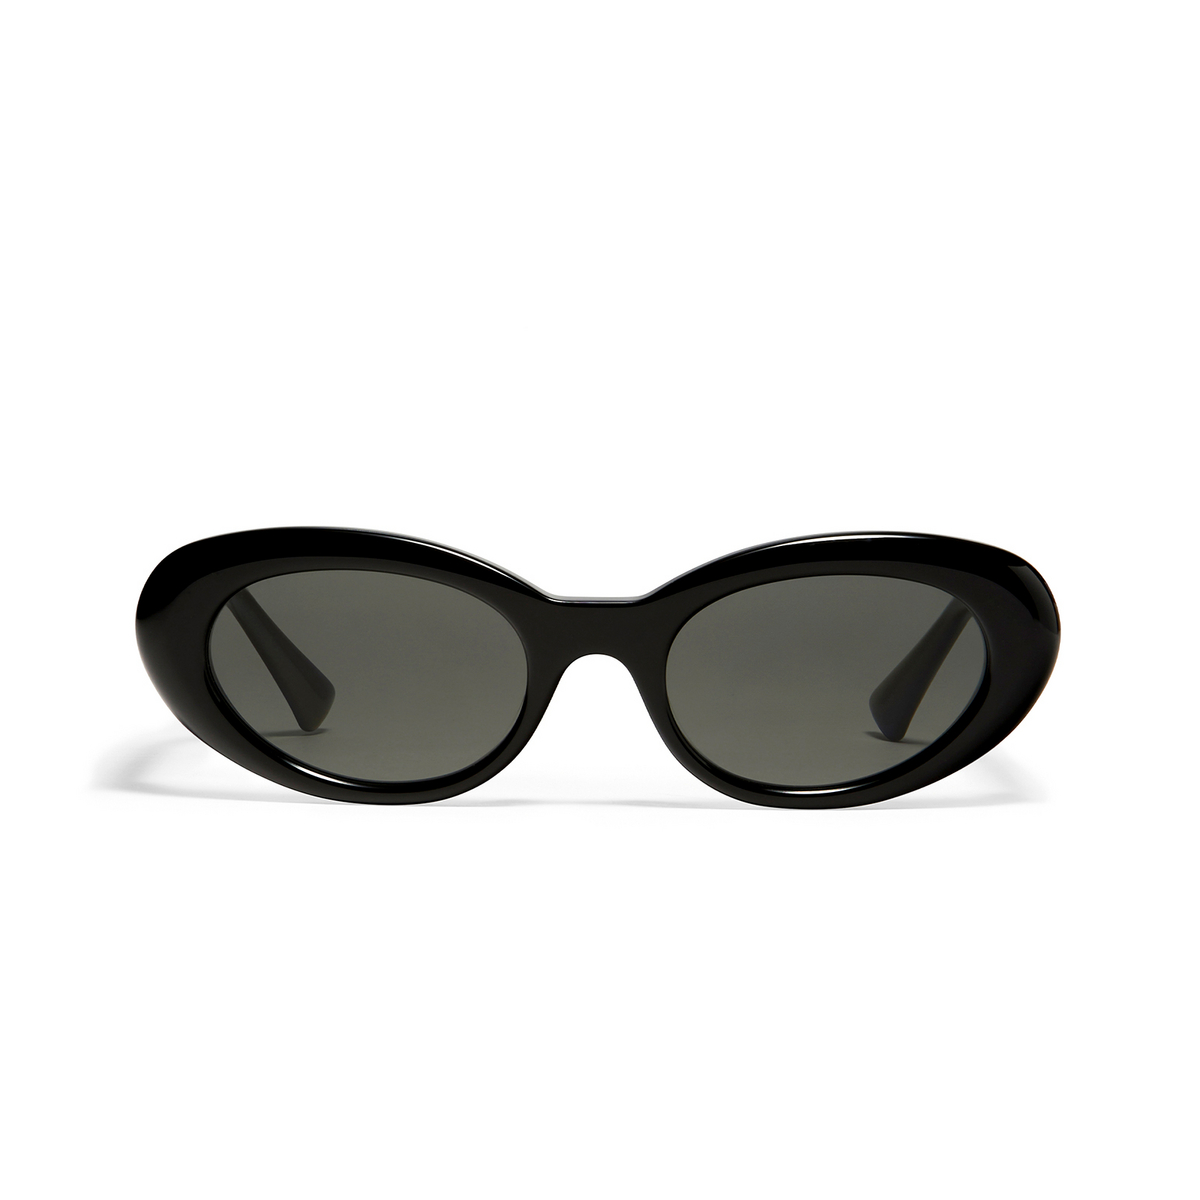 Gentle Monster LE Sunglasses 01 Black - front view